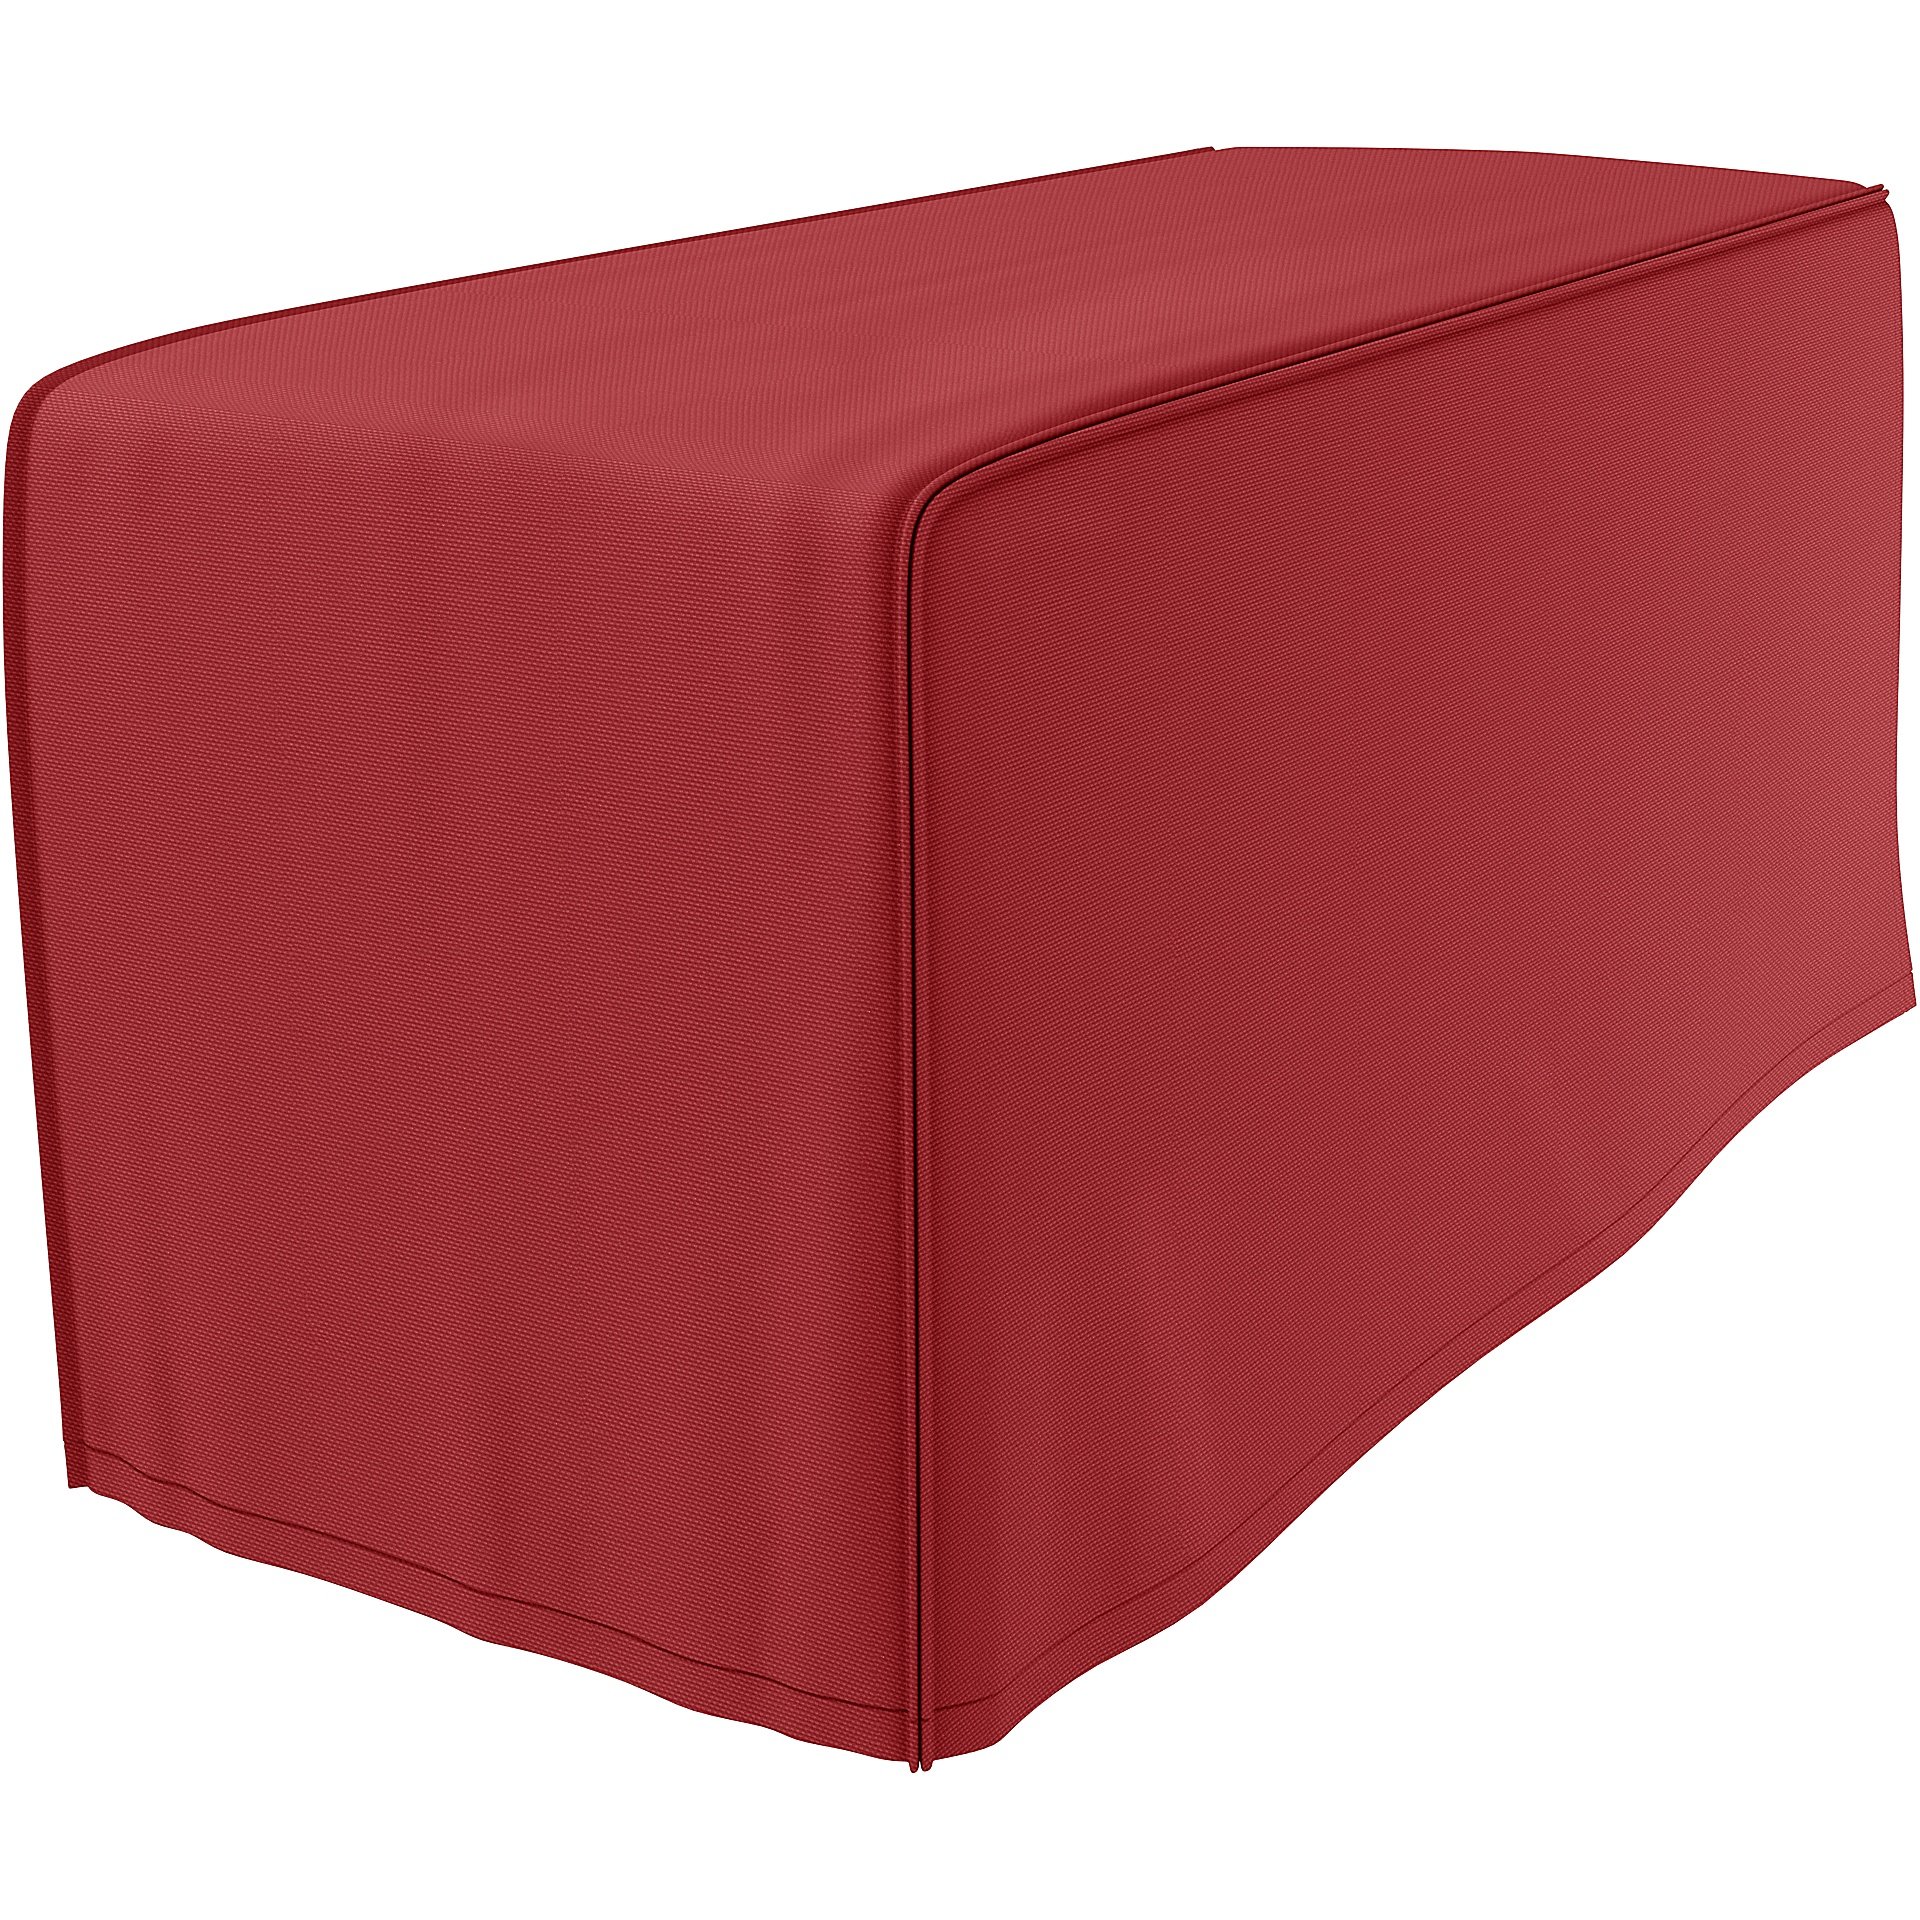 IKEA - Kivik Armrest Protectors (One pair), Scarlet Red, Cotton - Bemz